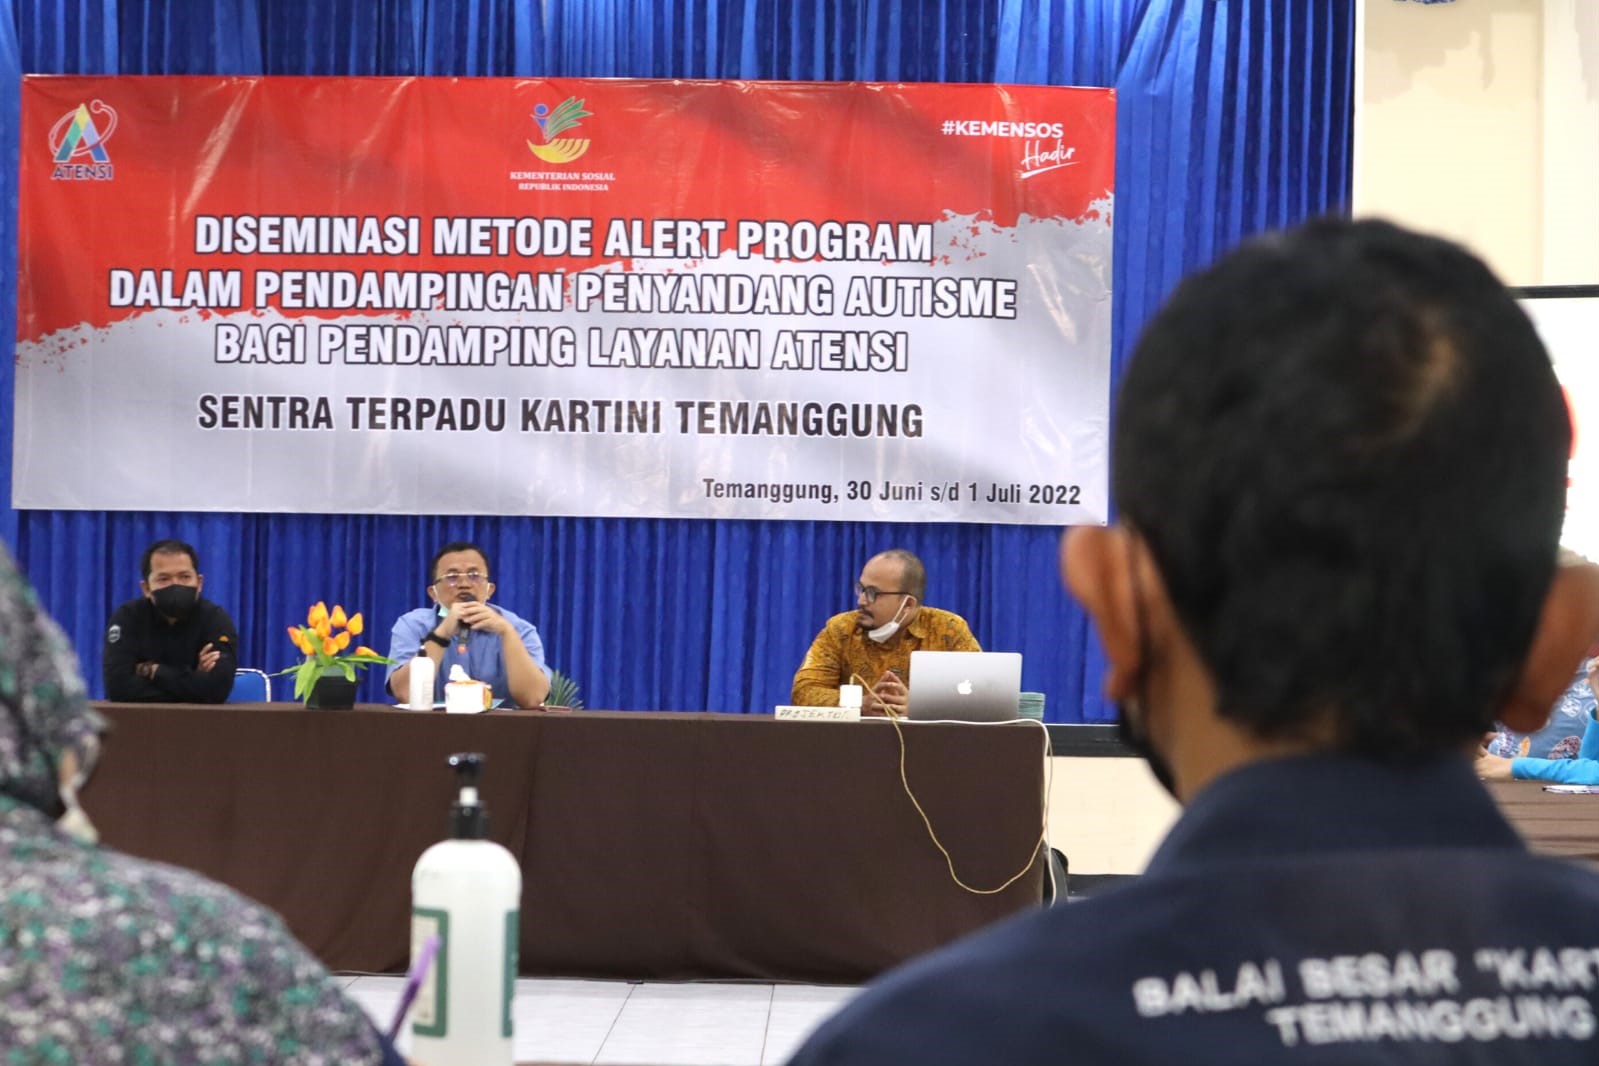 Diseminasi Metode "Alert Program" di Sentra Terpadu Kartini Temanggung